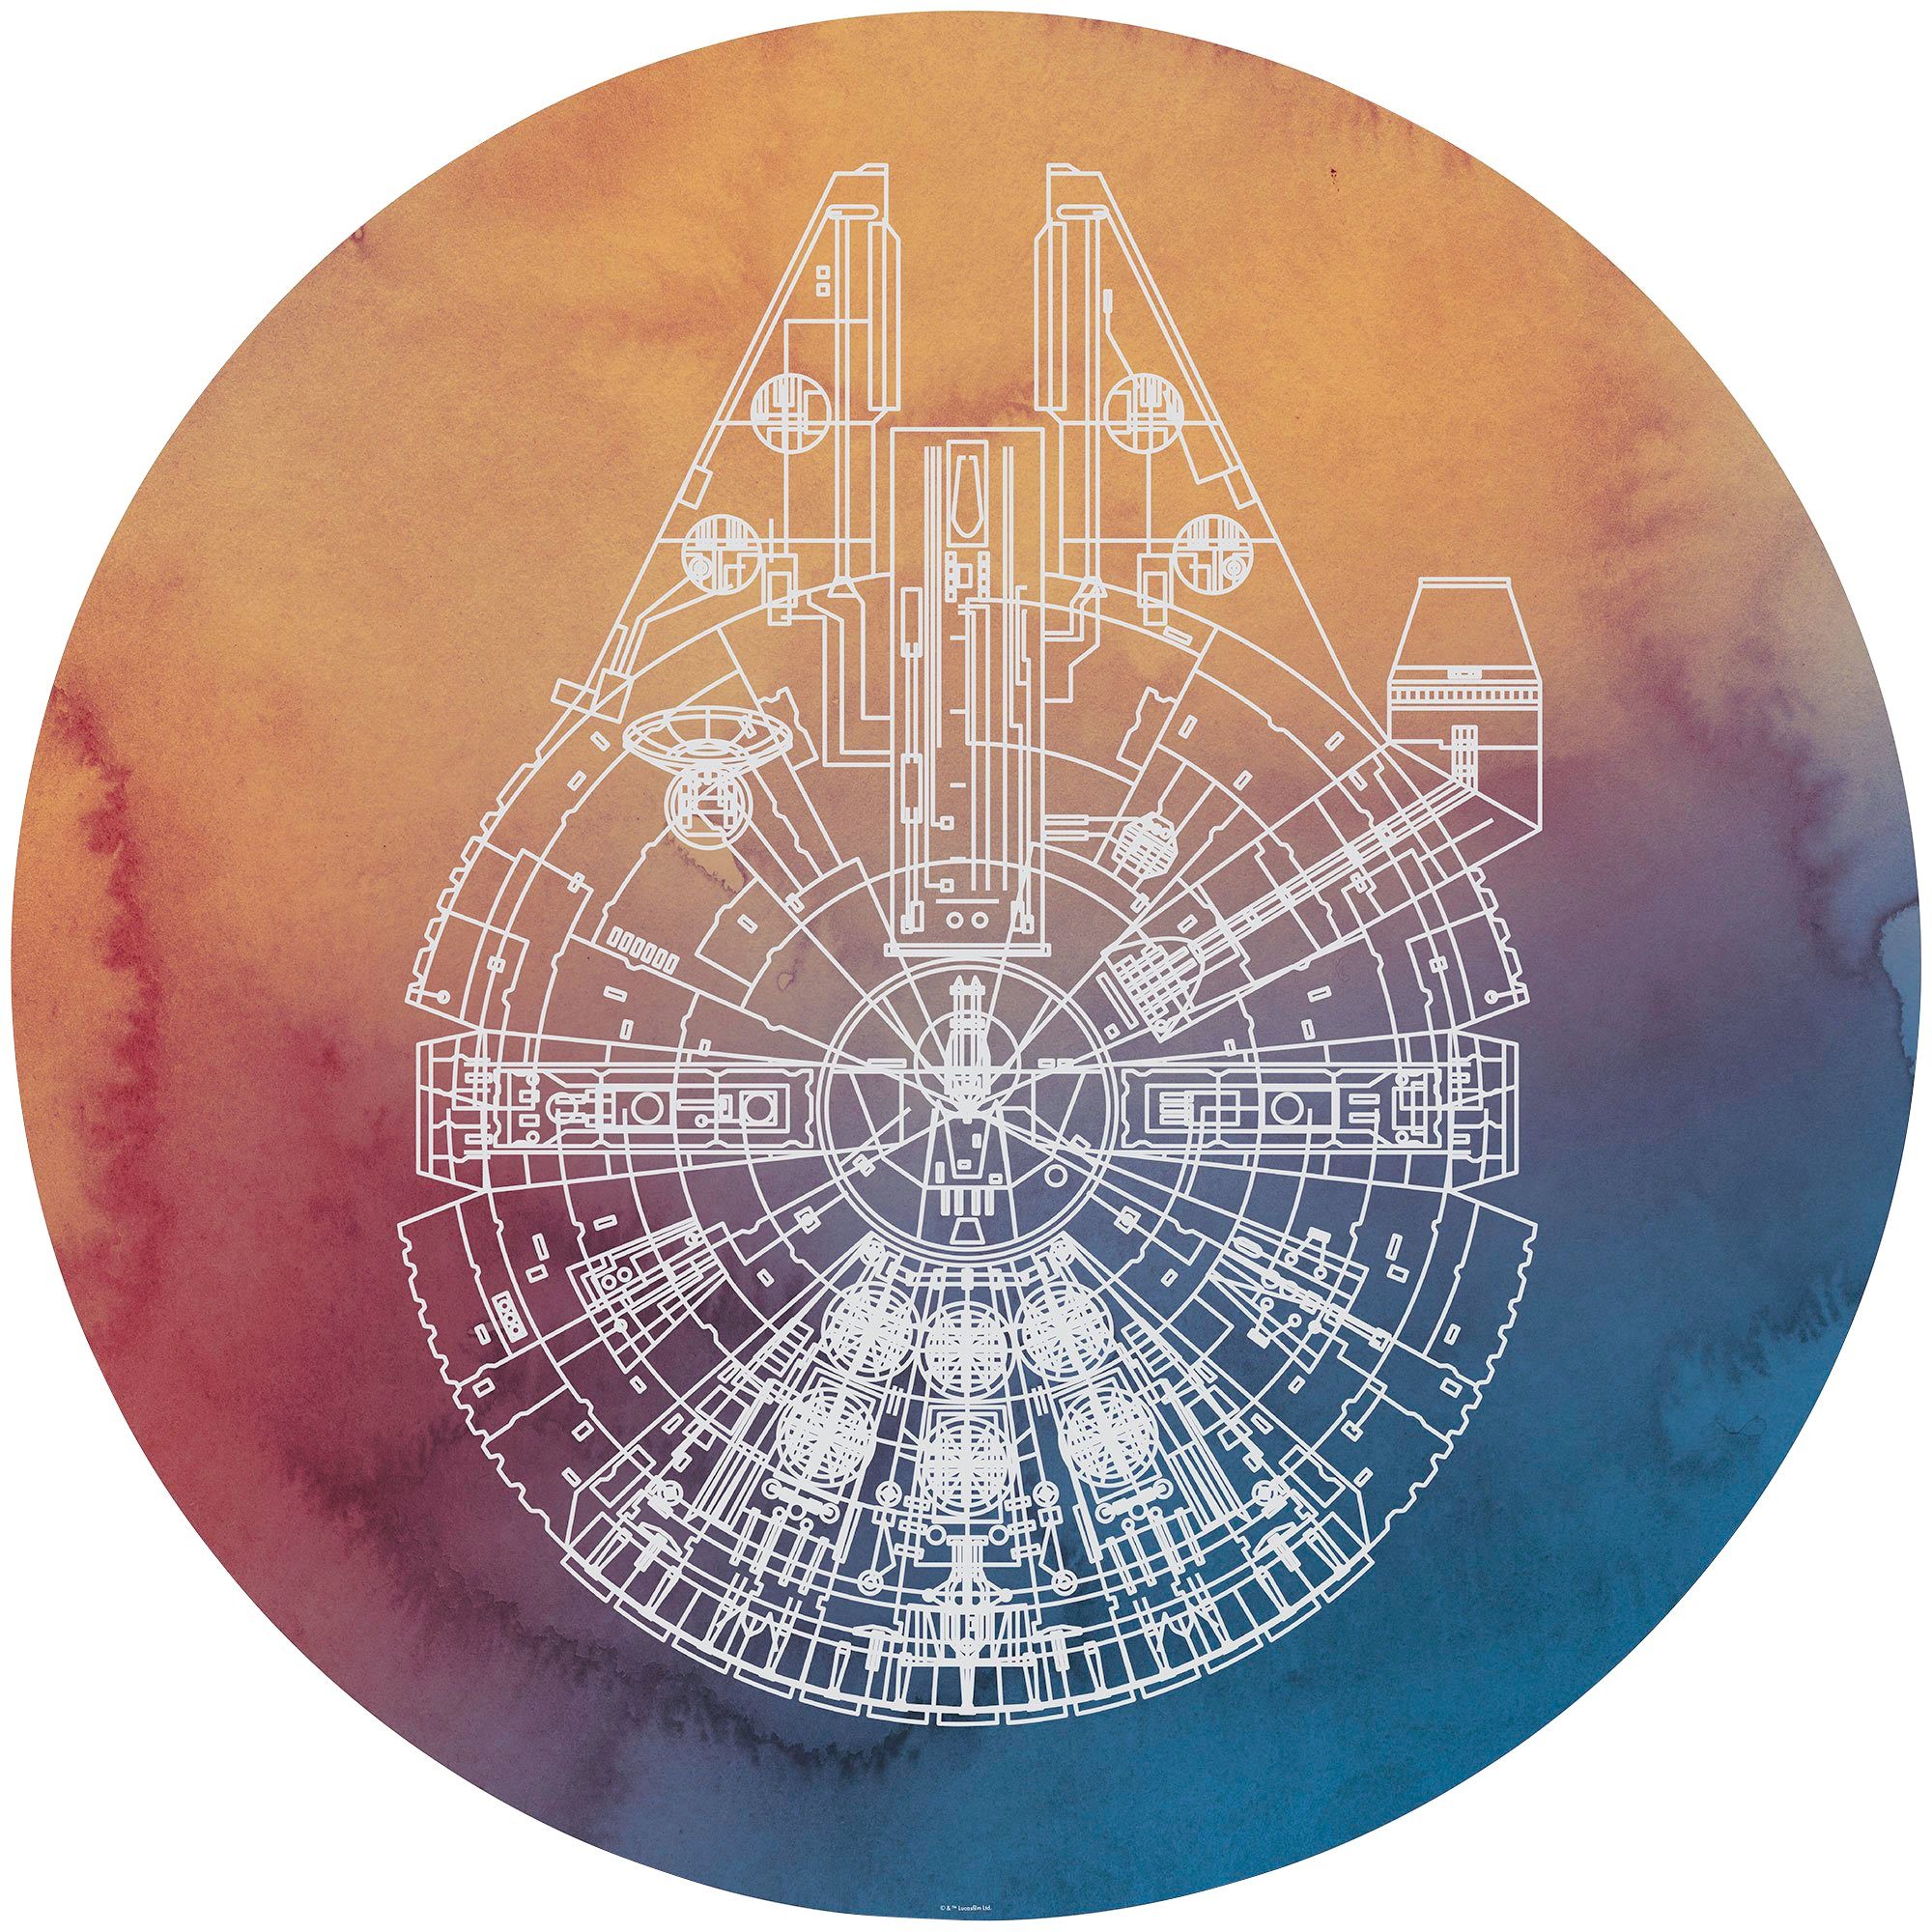 Komar Fototapete Star Wars Millennium Falcon, 125x125 cm (Breite x Höhe),  rund und selbstklebend